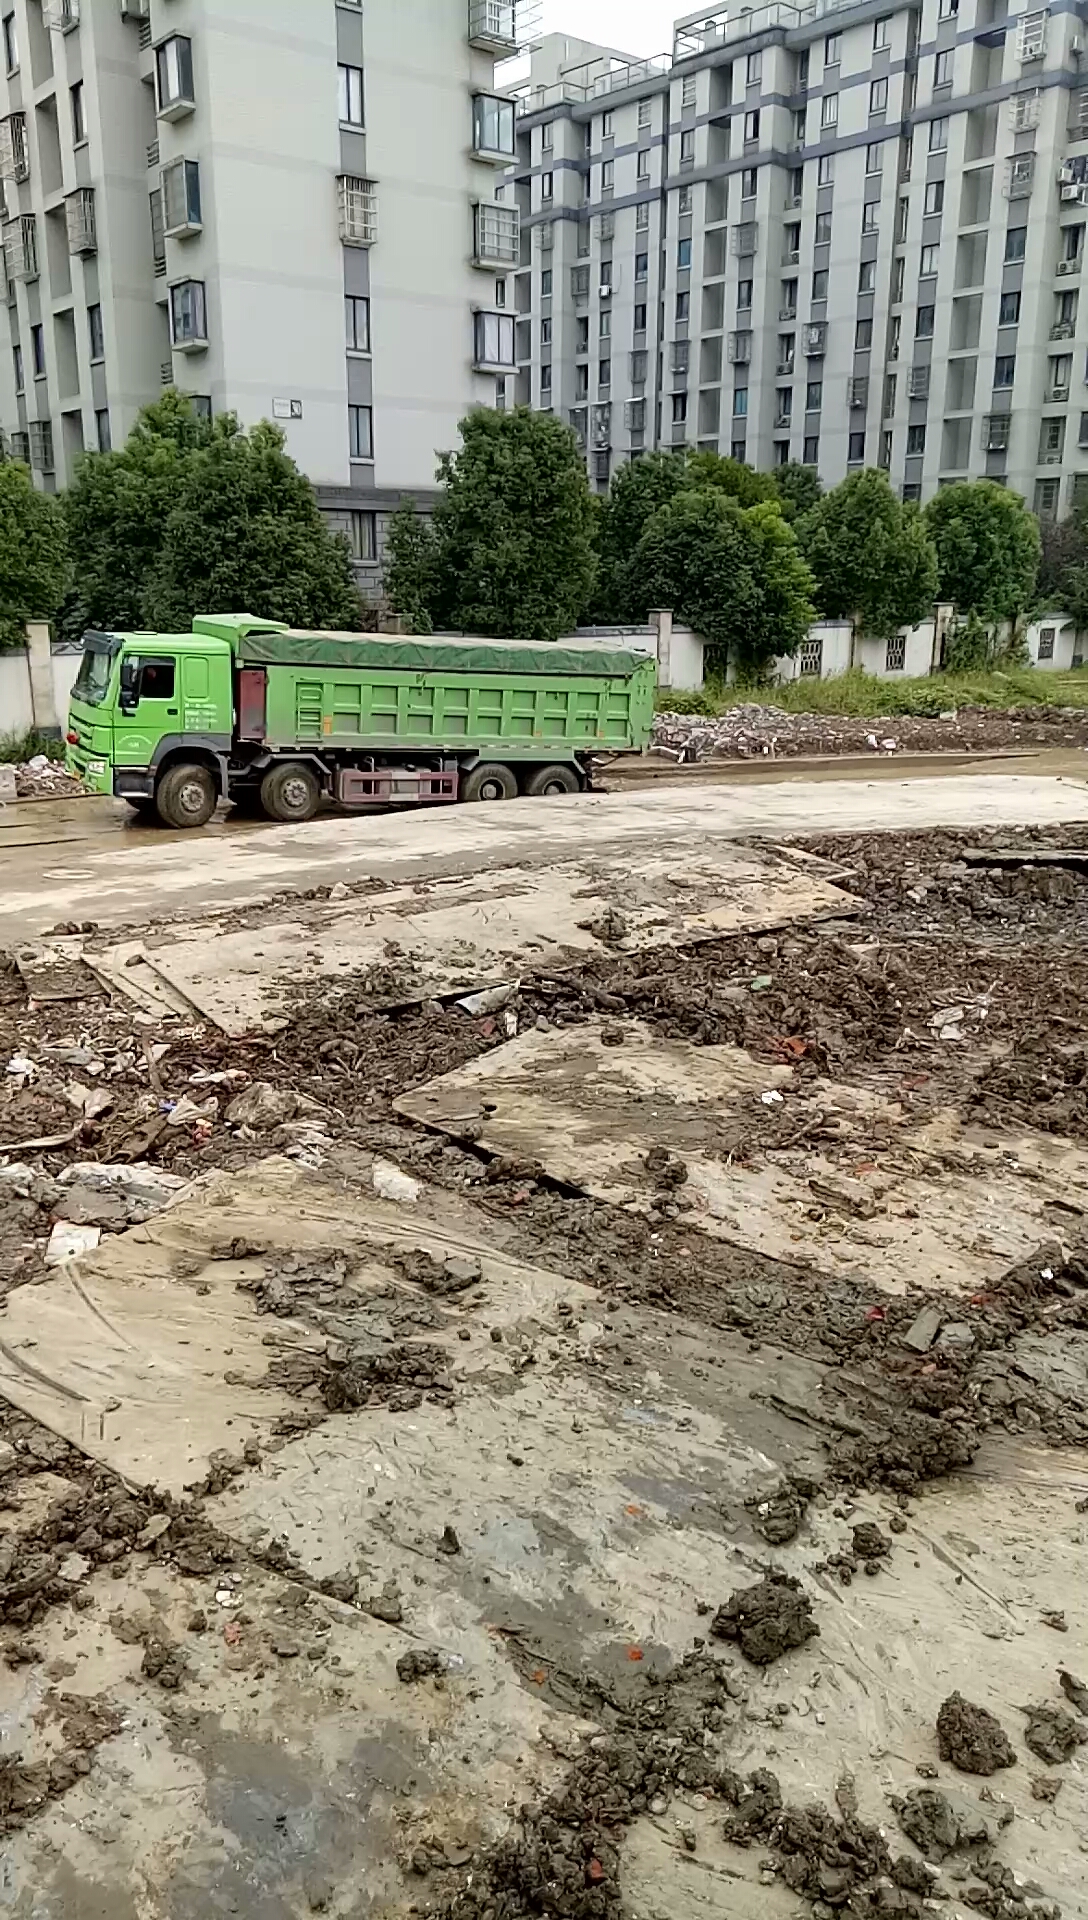 给大家发点在杭州开挖机的工作视频 .图片欣赏一下